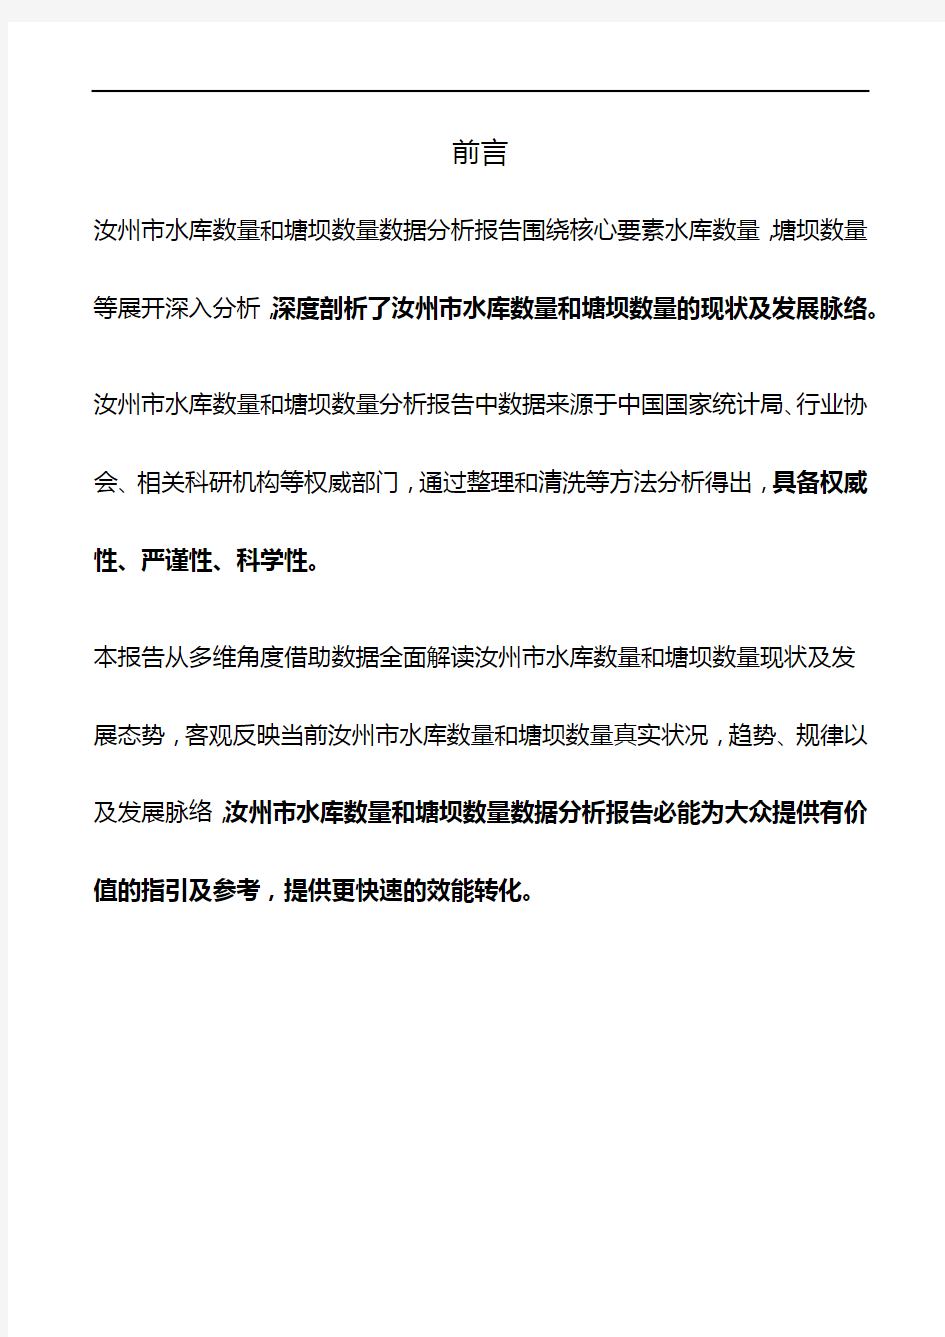 河南省汝州市水库数量和塘坝数量数据分析报告2019版